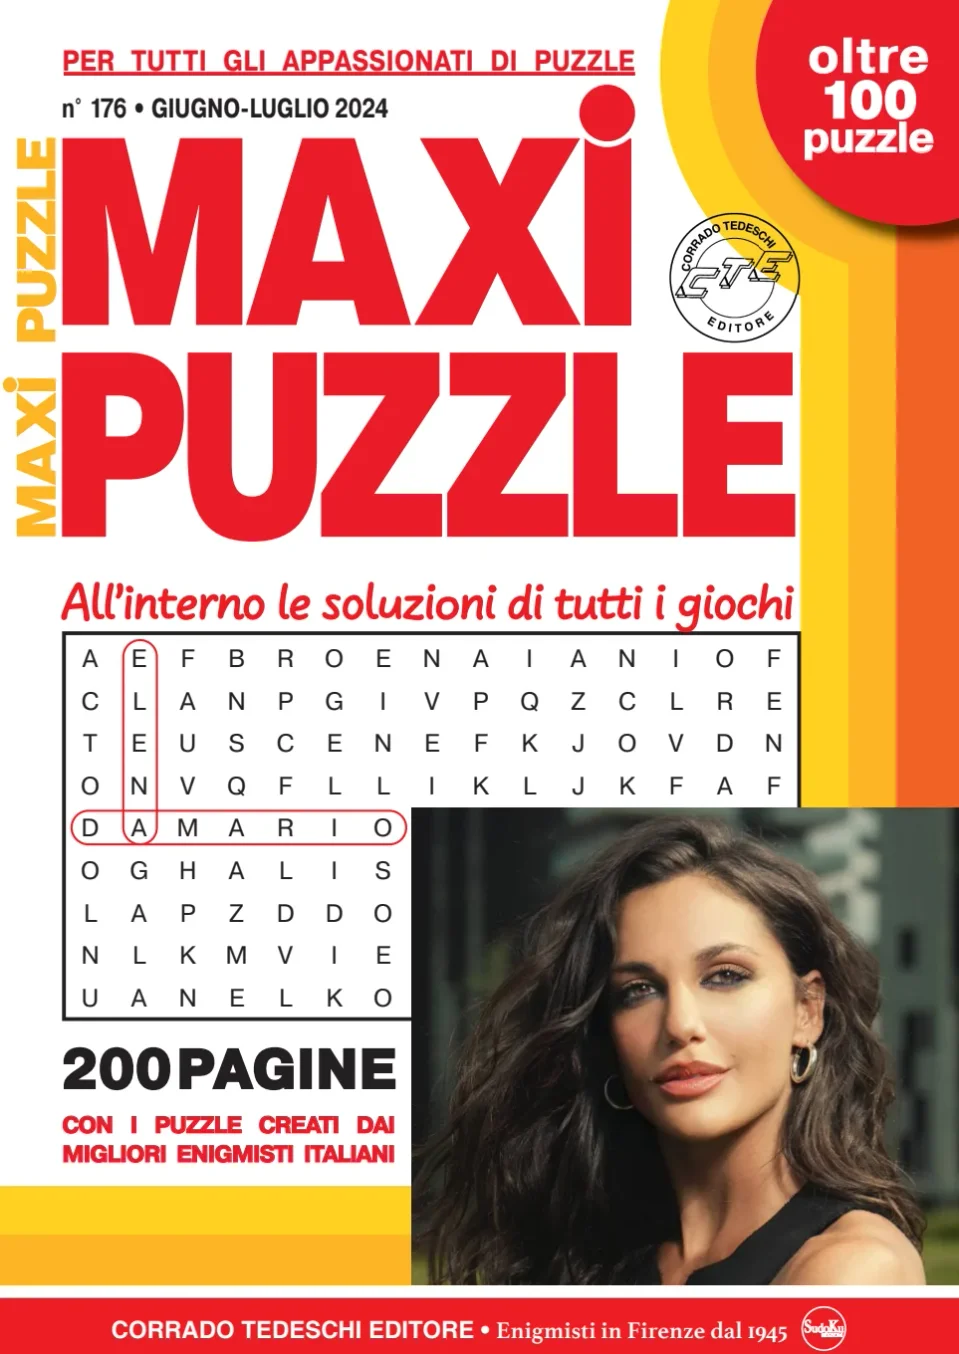 Maxi Puzzle